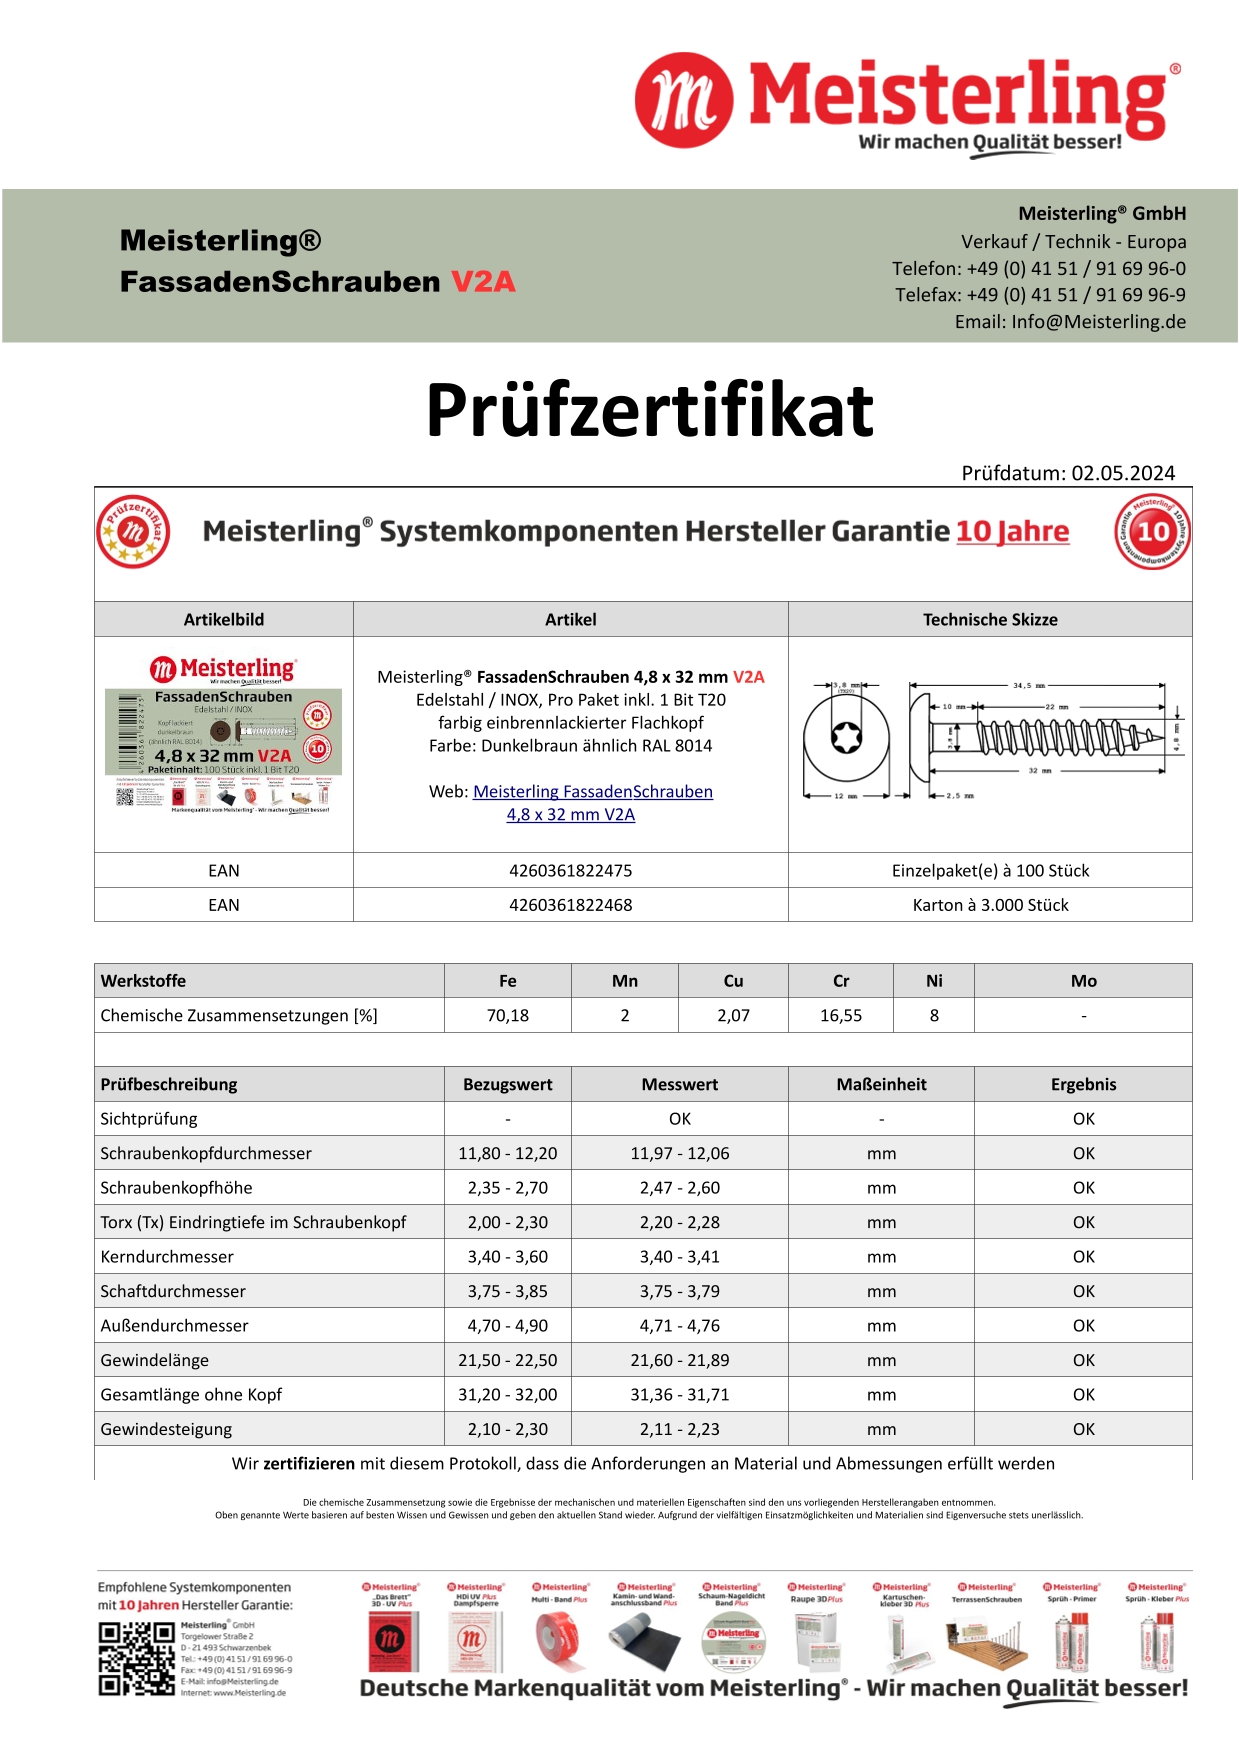 Prüfzertifikat Meisterling® FassadenSchrauben 4,8 x 32 mm V2a dunkelbraun